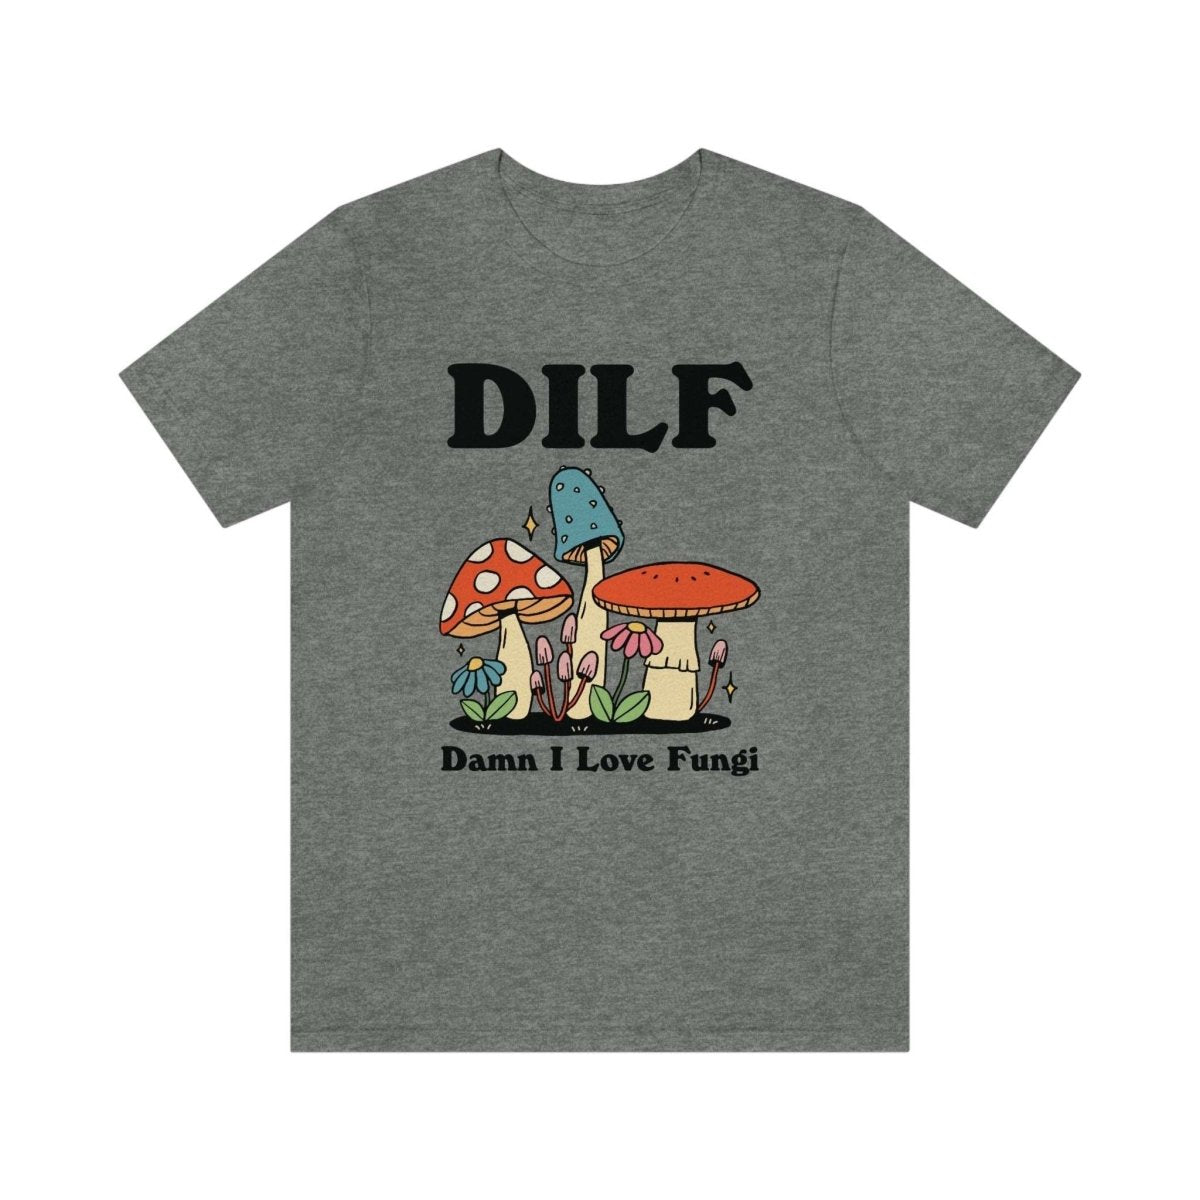 'Dilf Man I Love Fungi' Mushroom Tshirt - T-shirts - Kinder Planet Company